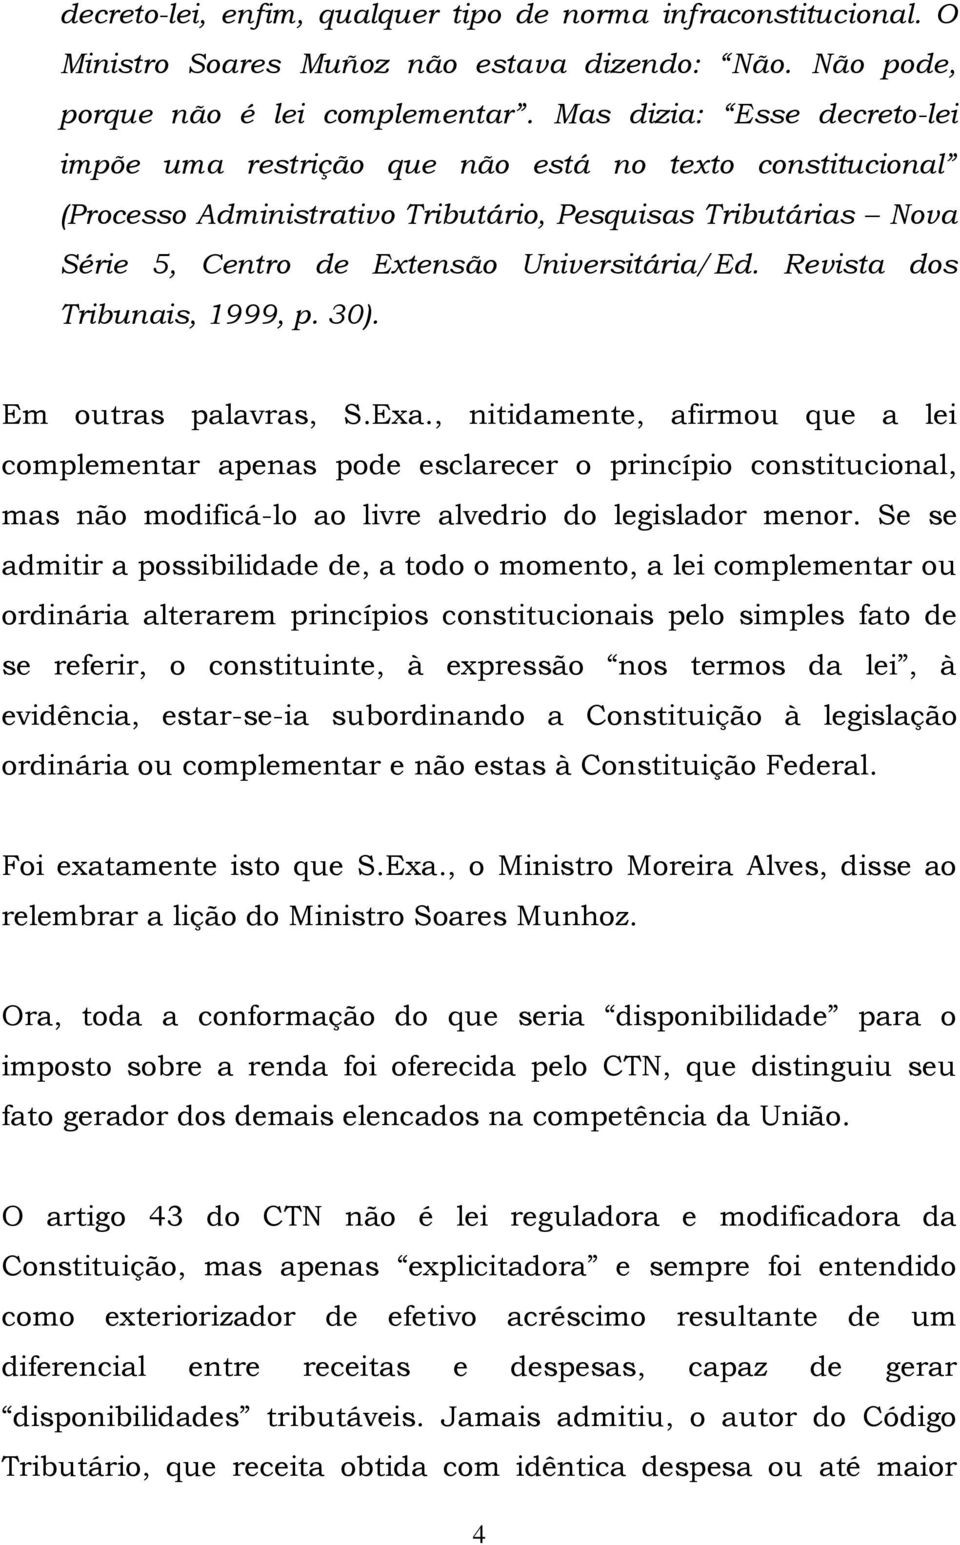 Revista dos Tribunais, 1999, p. 30). Em outras palavras, S.Exa.